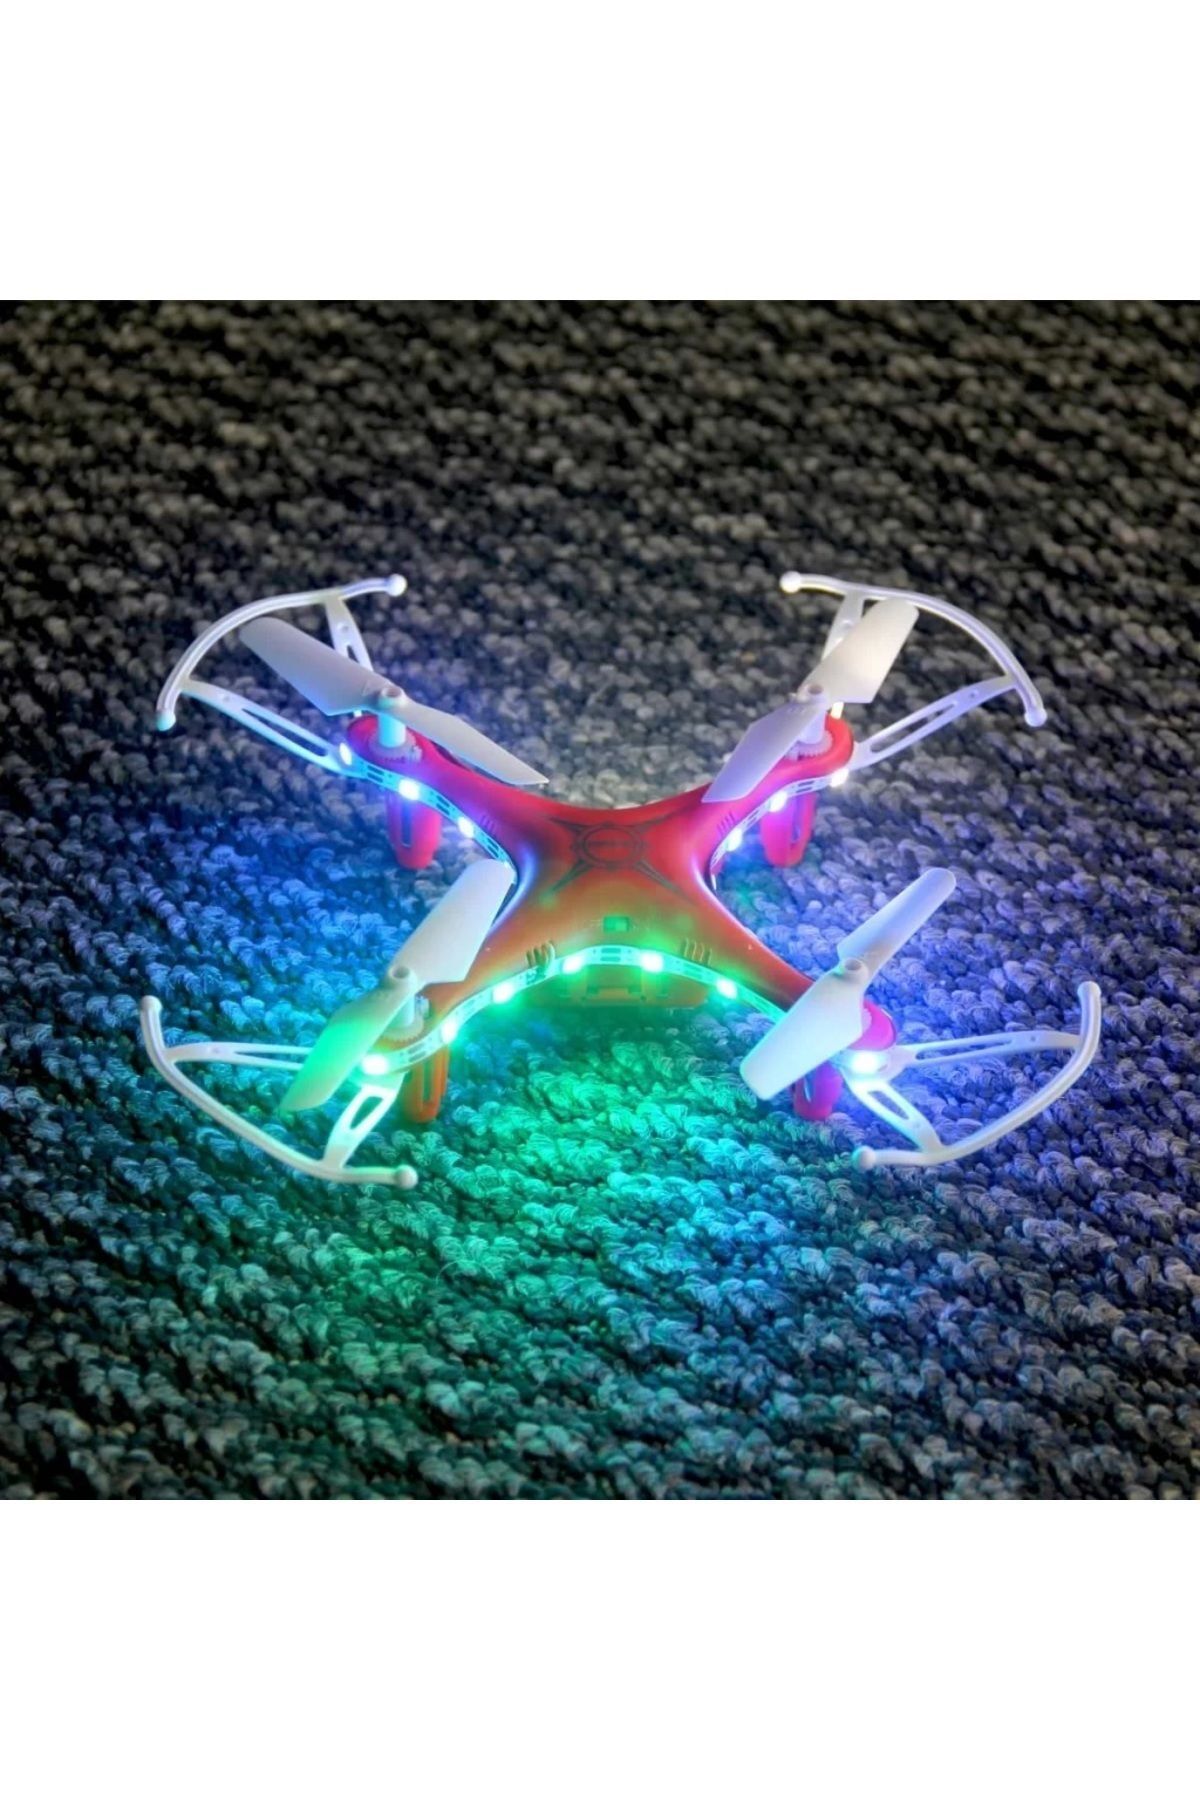 Erdem Oyuncak Çocuk Led Işıklı Uzaktan Kumandalı Eğlenceli Drone 2.4ghz